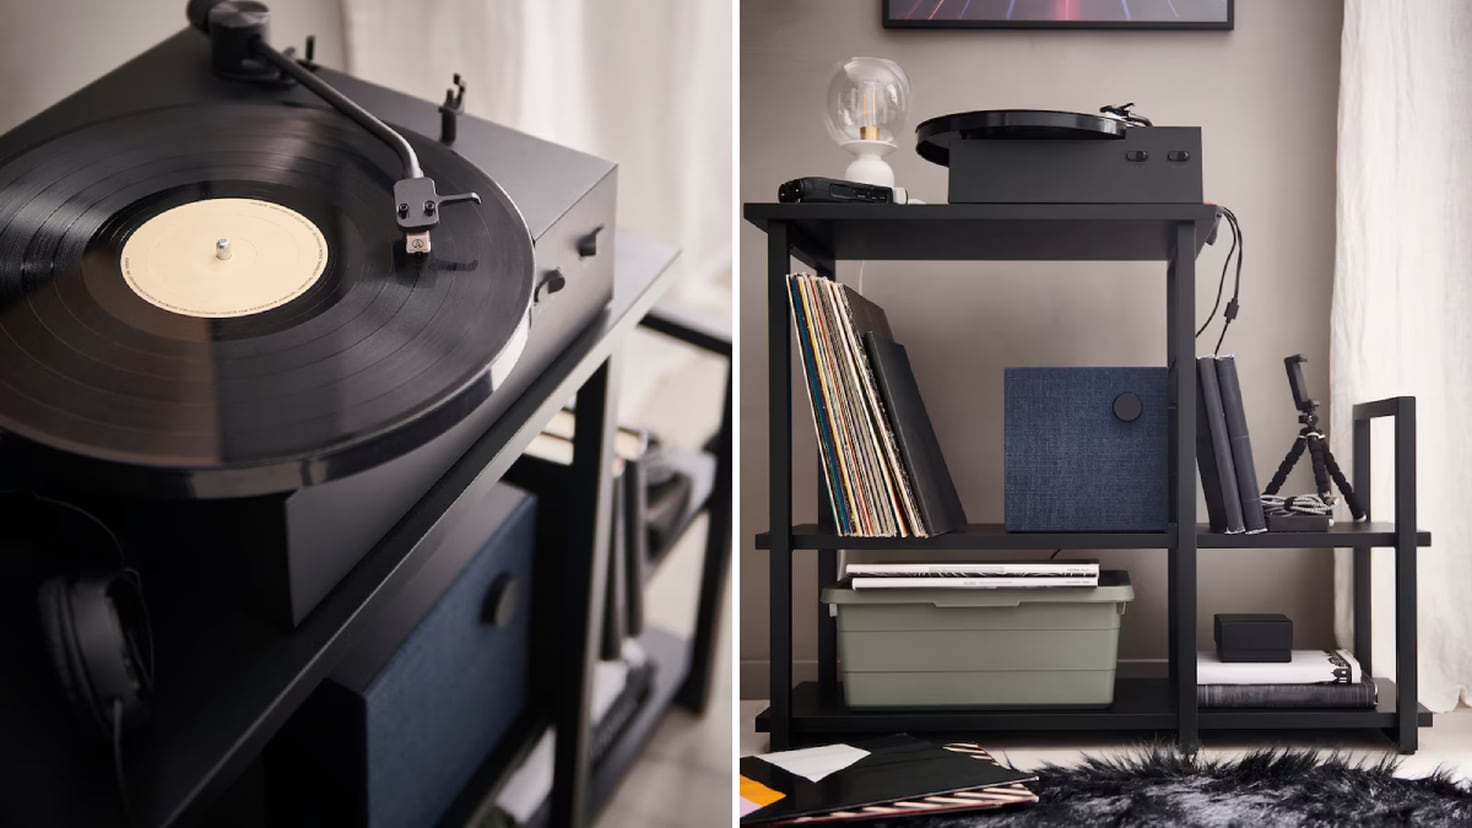 Amante del vinilo? Ikea ha lanzado este tocadiscos de edición limitada que  es moderno minimalista y barato - Showroom